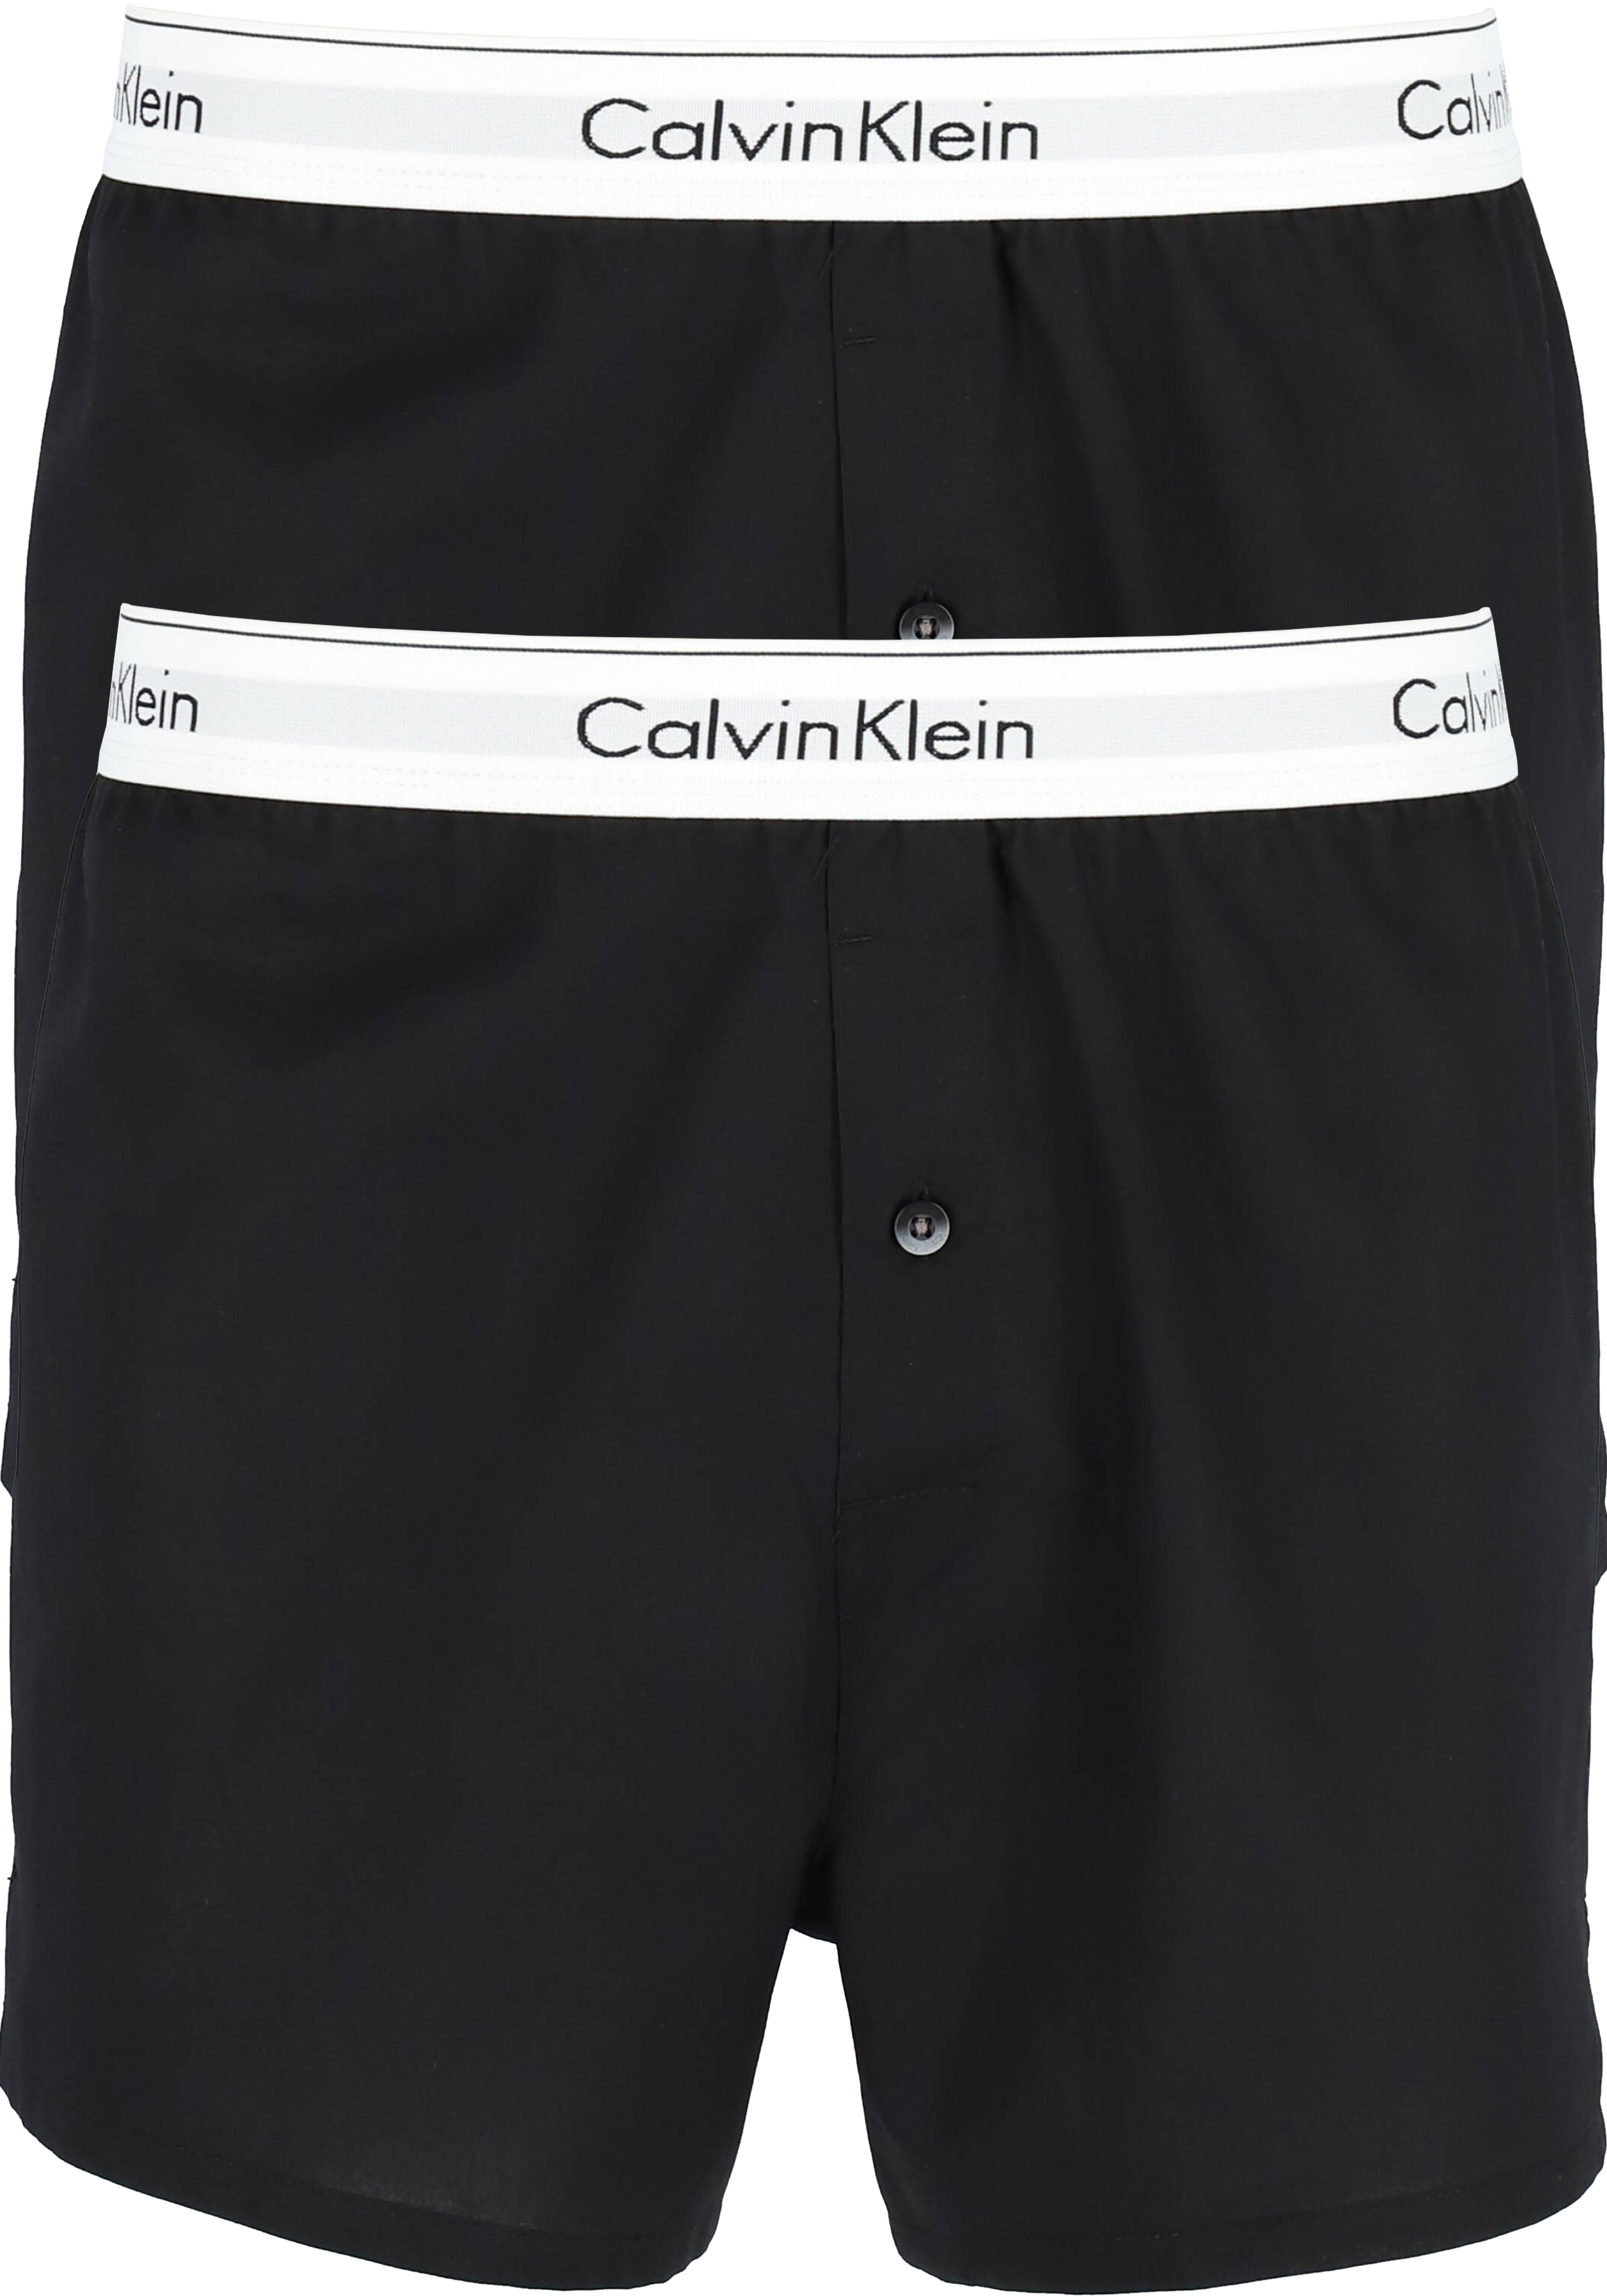 Calvin Klein Denim Boxers Nb1396a-001 in het Zwart voor heren Heren Kleding voor voor Ondergoed voor Boxershorts 